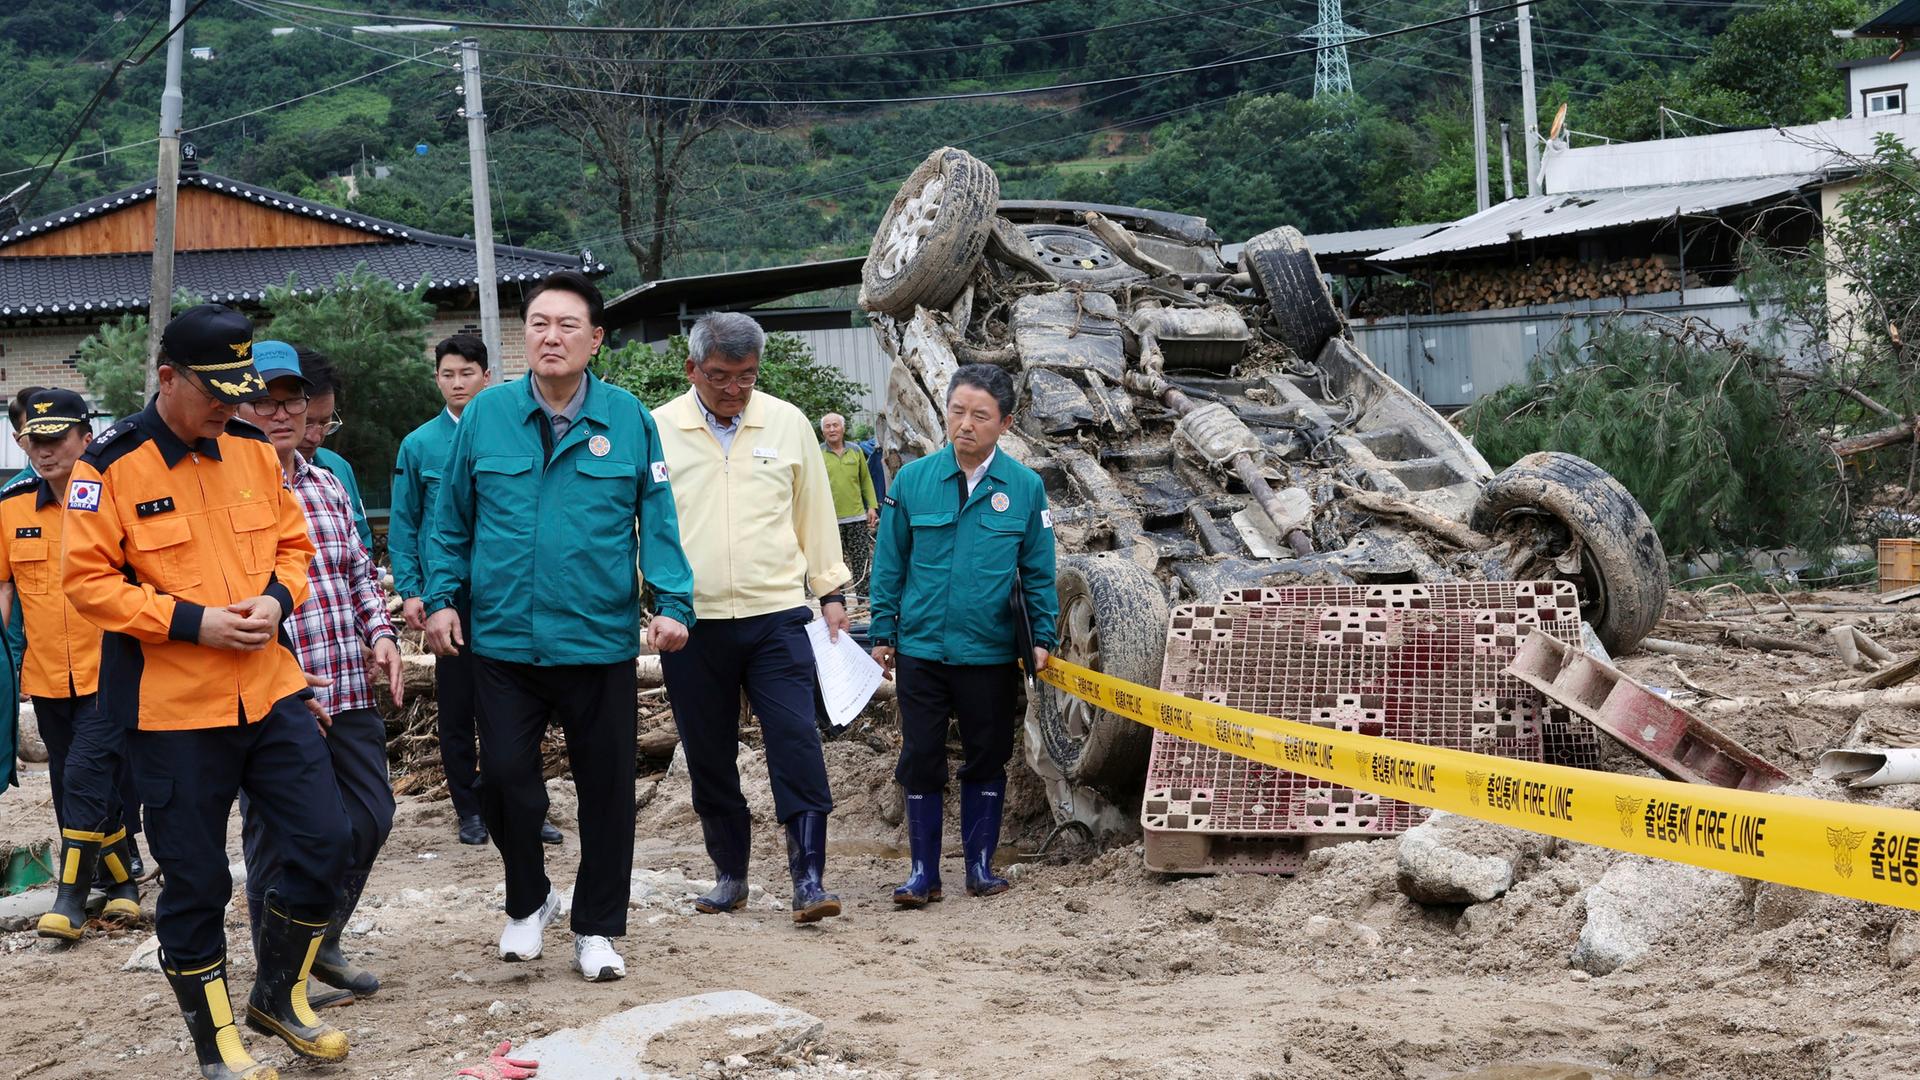 Südkorea, Yecheon: Yoon Suk Yeol (M), Präsident von Südkorea, besichtigt ein von der Flut geschädigtes Gebiet. Bei den massiven Regenfällen und Überschwemmungen in Südkorea ist die Zahl der Todesopfer auf mindestens 40 gestiegen.